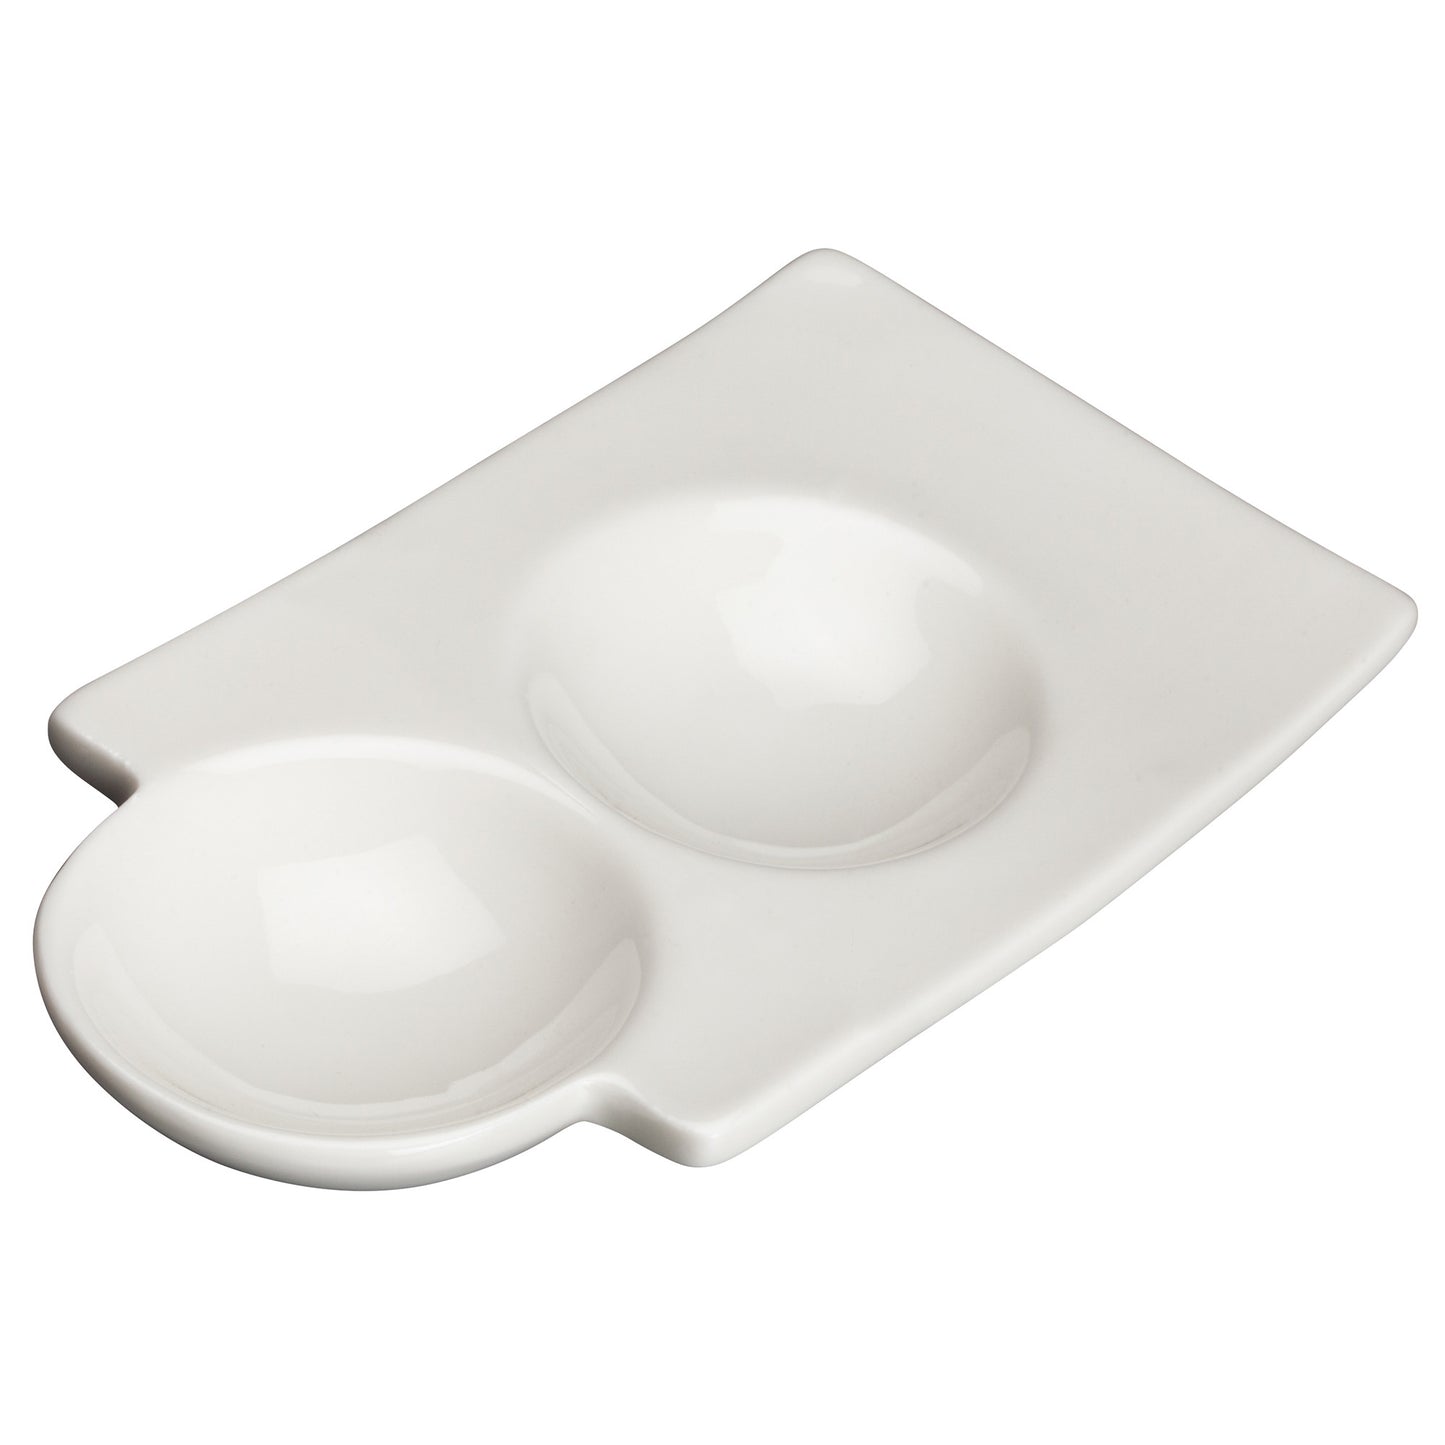 WDP017-106 - 6" Porcelain Duo Dish, Bright White, 36 pcs/case